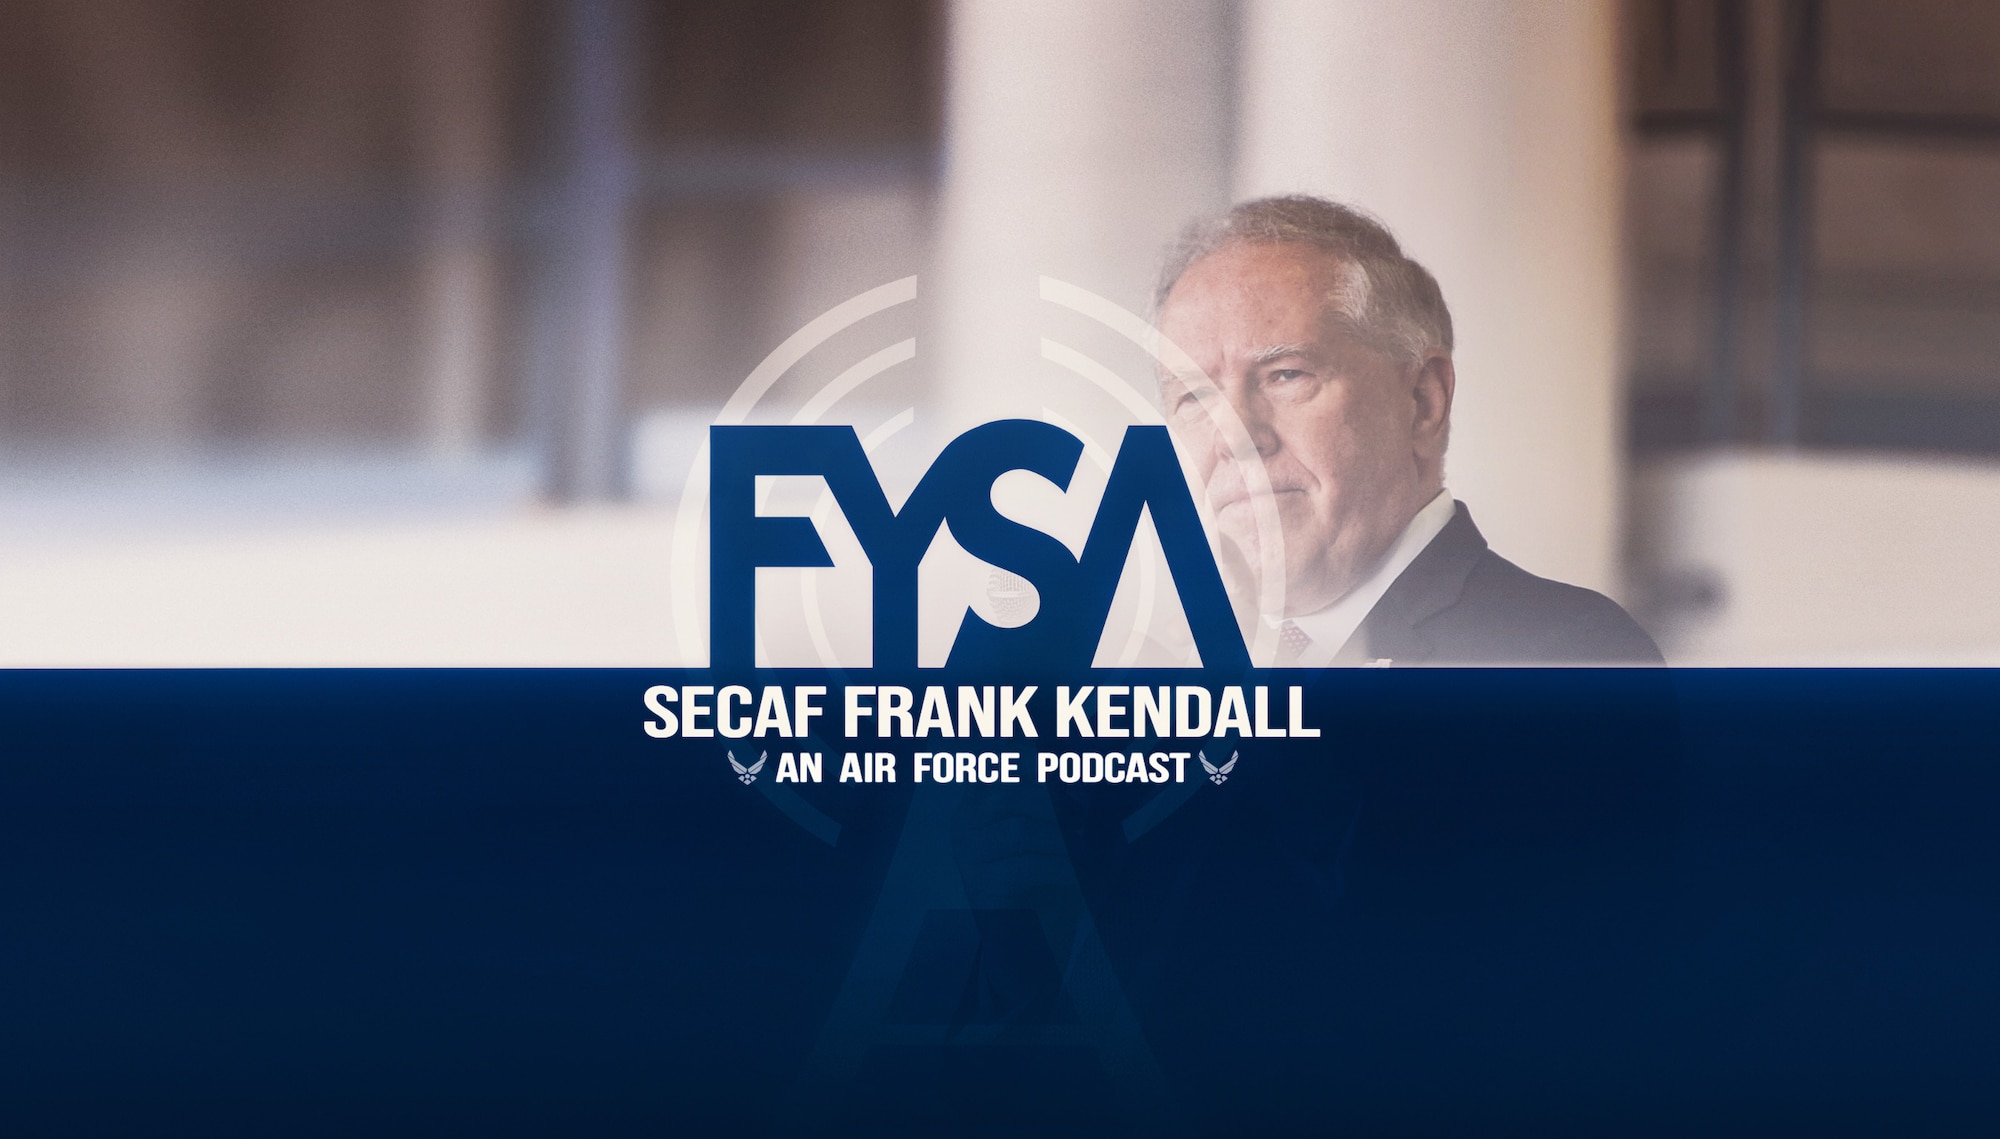 FYSA: SecAF Frank Kendall